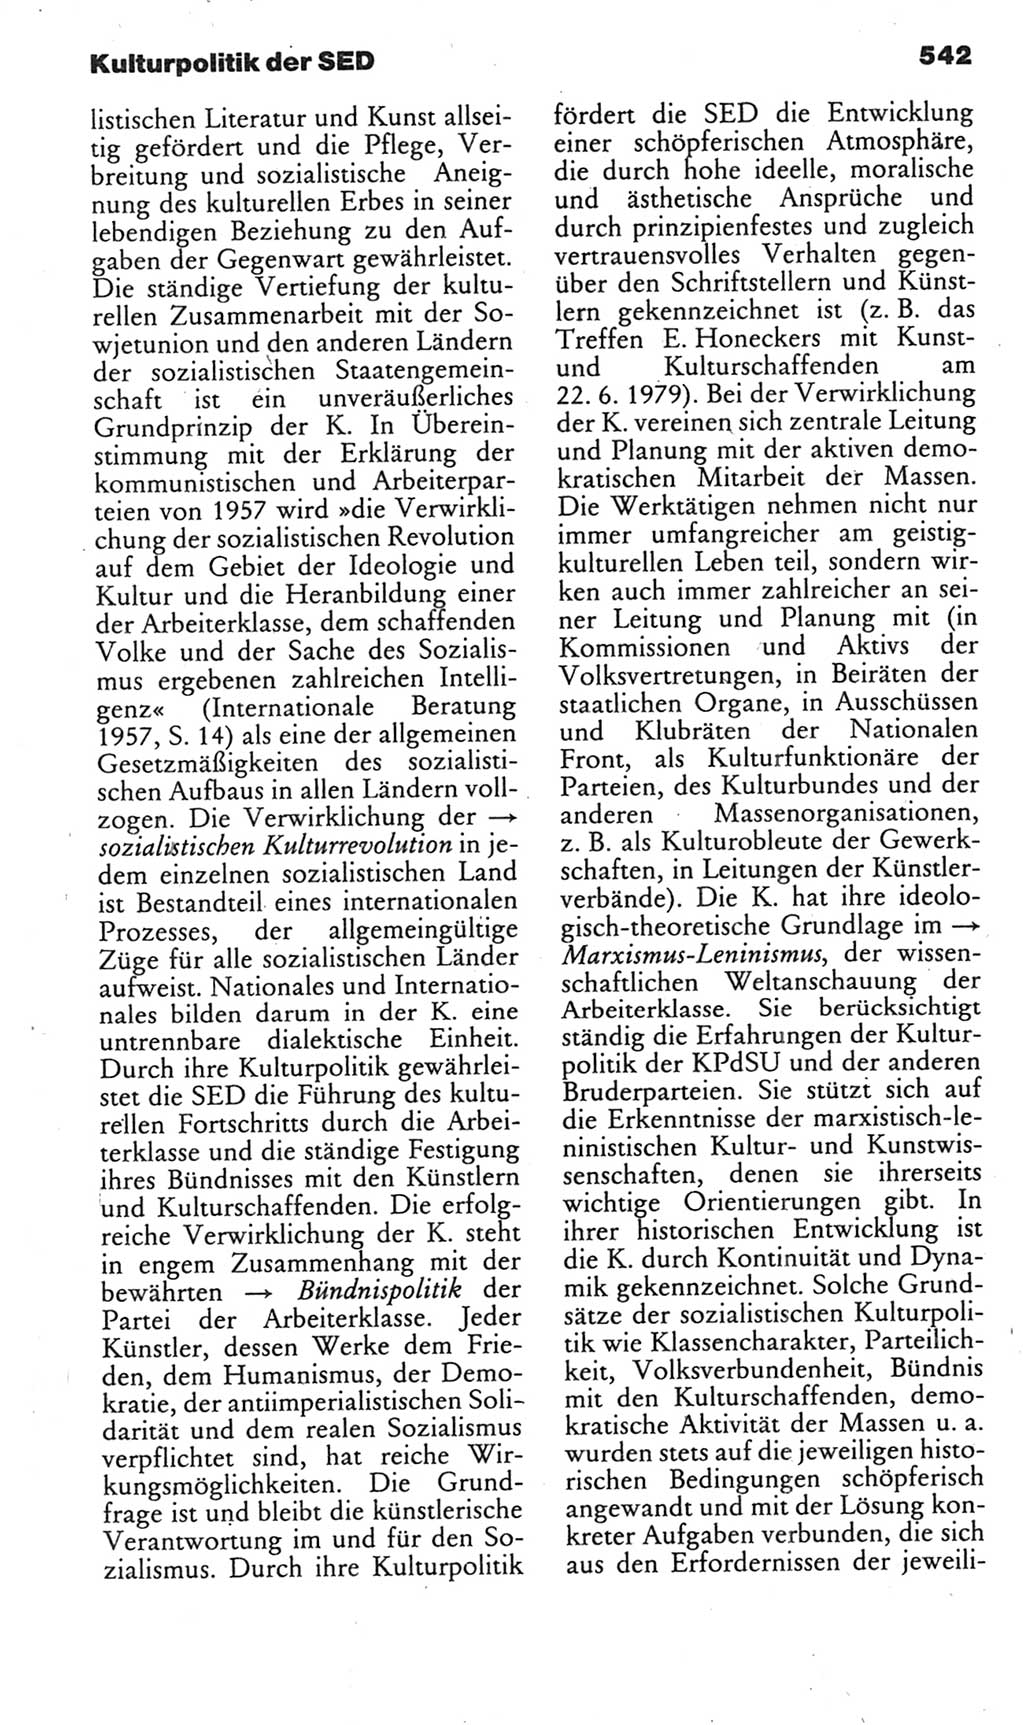 Kleines politisches Wörterbuch [Deutsche Demokratische Republik (DDR)] 1985, Seite 542 (Kl. pol. Wb. DDR 1985, S. 542)